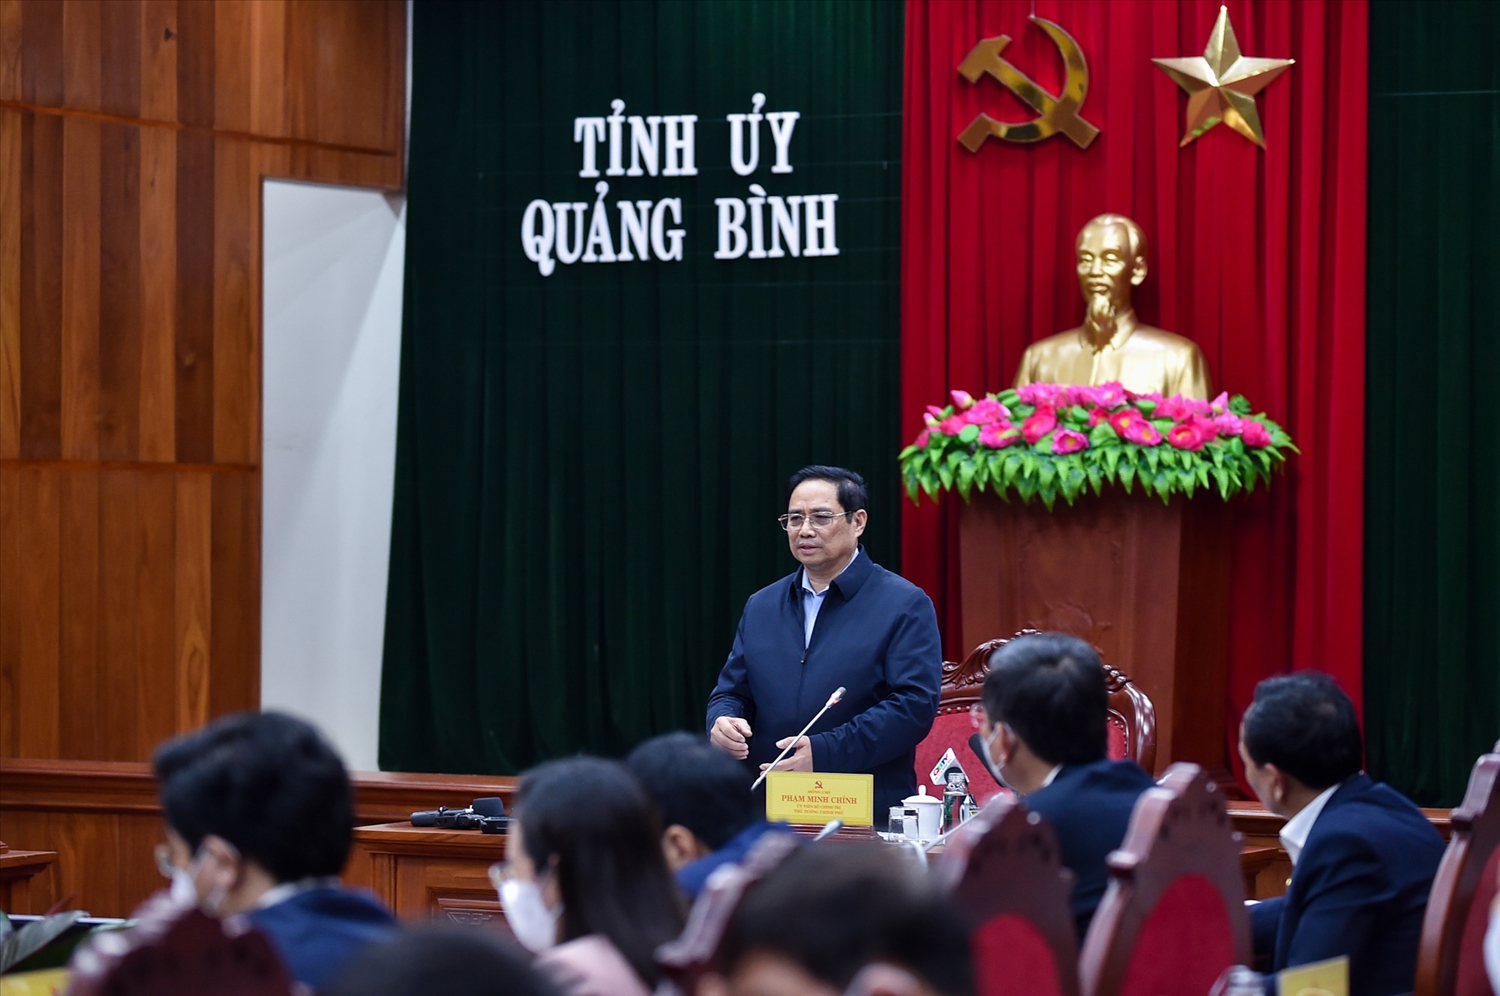 Thủ tướng yêu cầu Quảng Bình phải chuẩn bị tâm thế để thực hiện nhiệm vụ năm 2022 tốt hơn năm 2021. Ảnh: VGP/Nhật Bắc